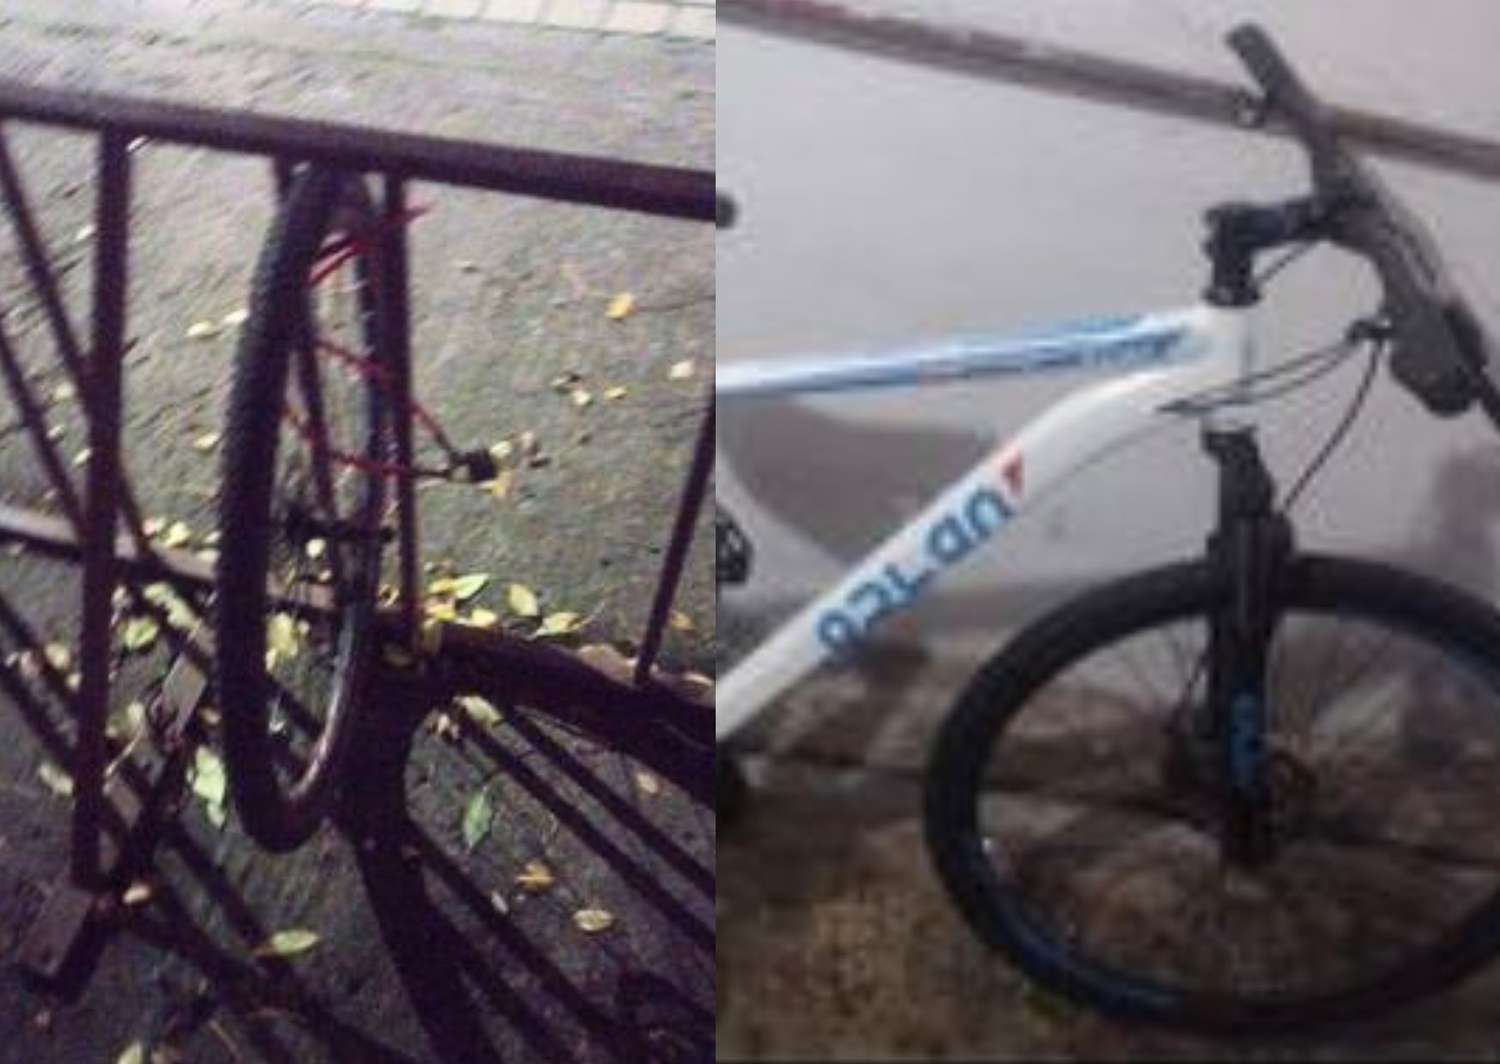 Le robaron la bicicleta afuera de la escuela y le dejaron sólo una rueda